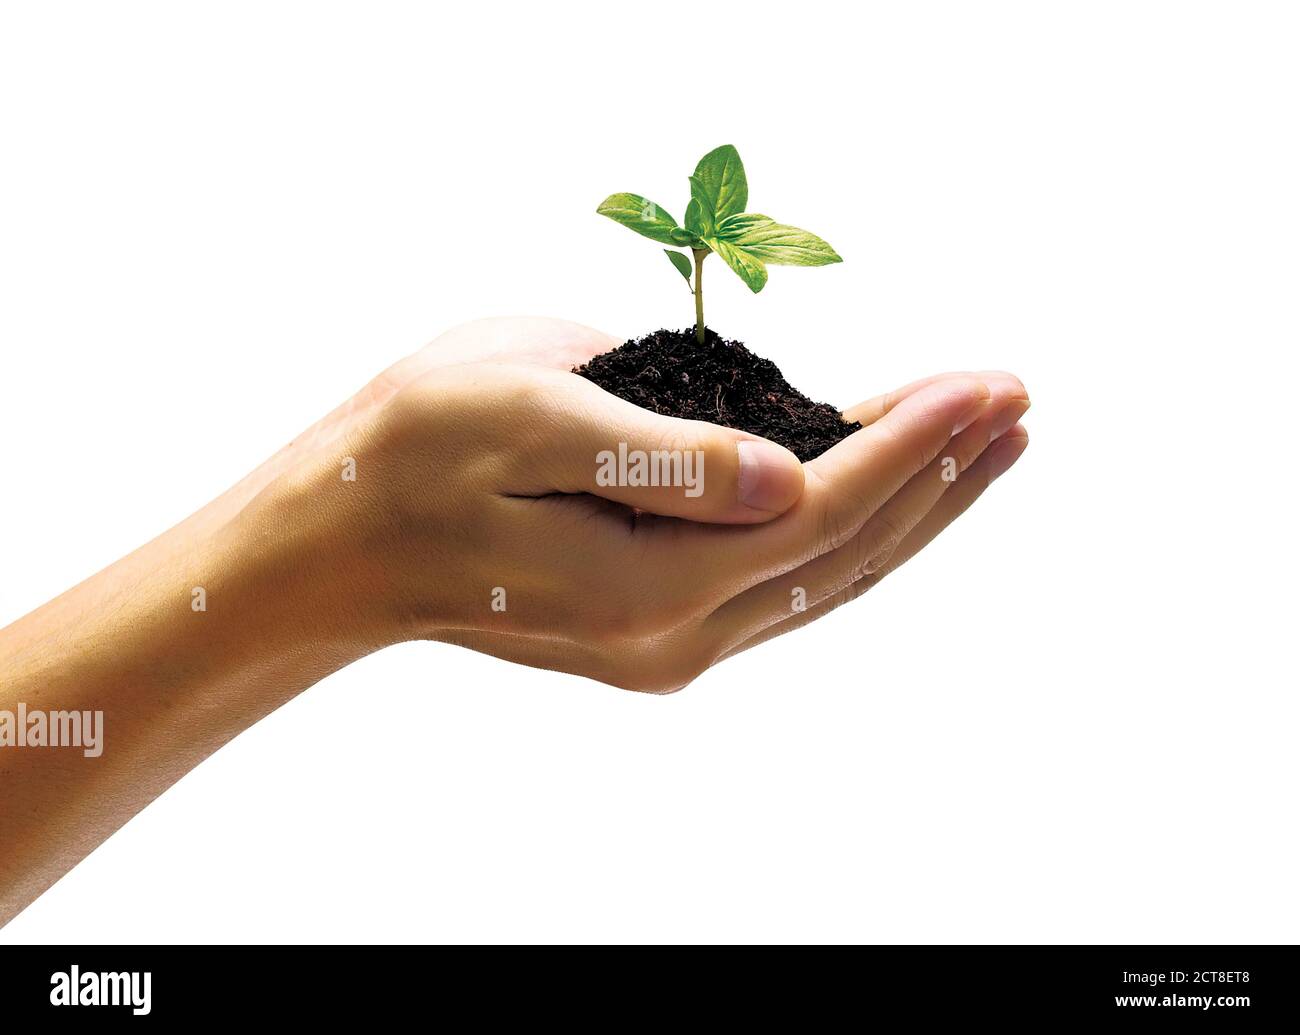 Hände halten junge grüne Pflanze auf weißem Hintergrund Stockfoto